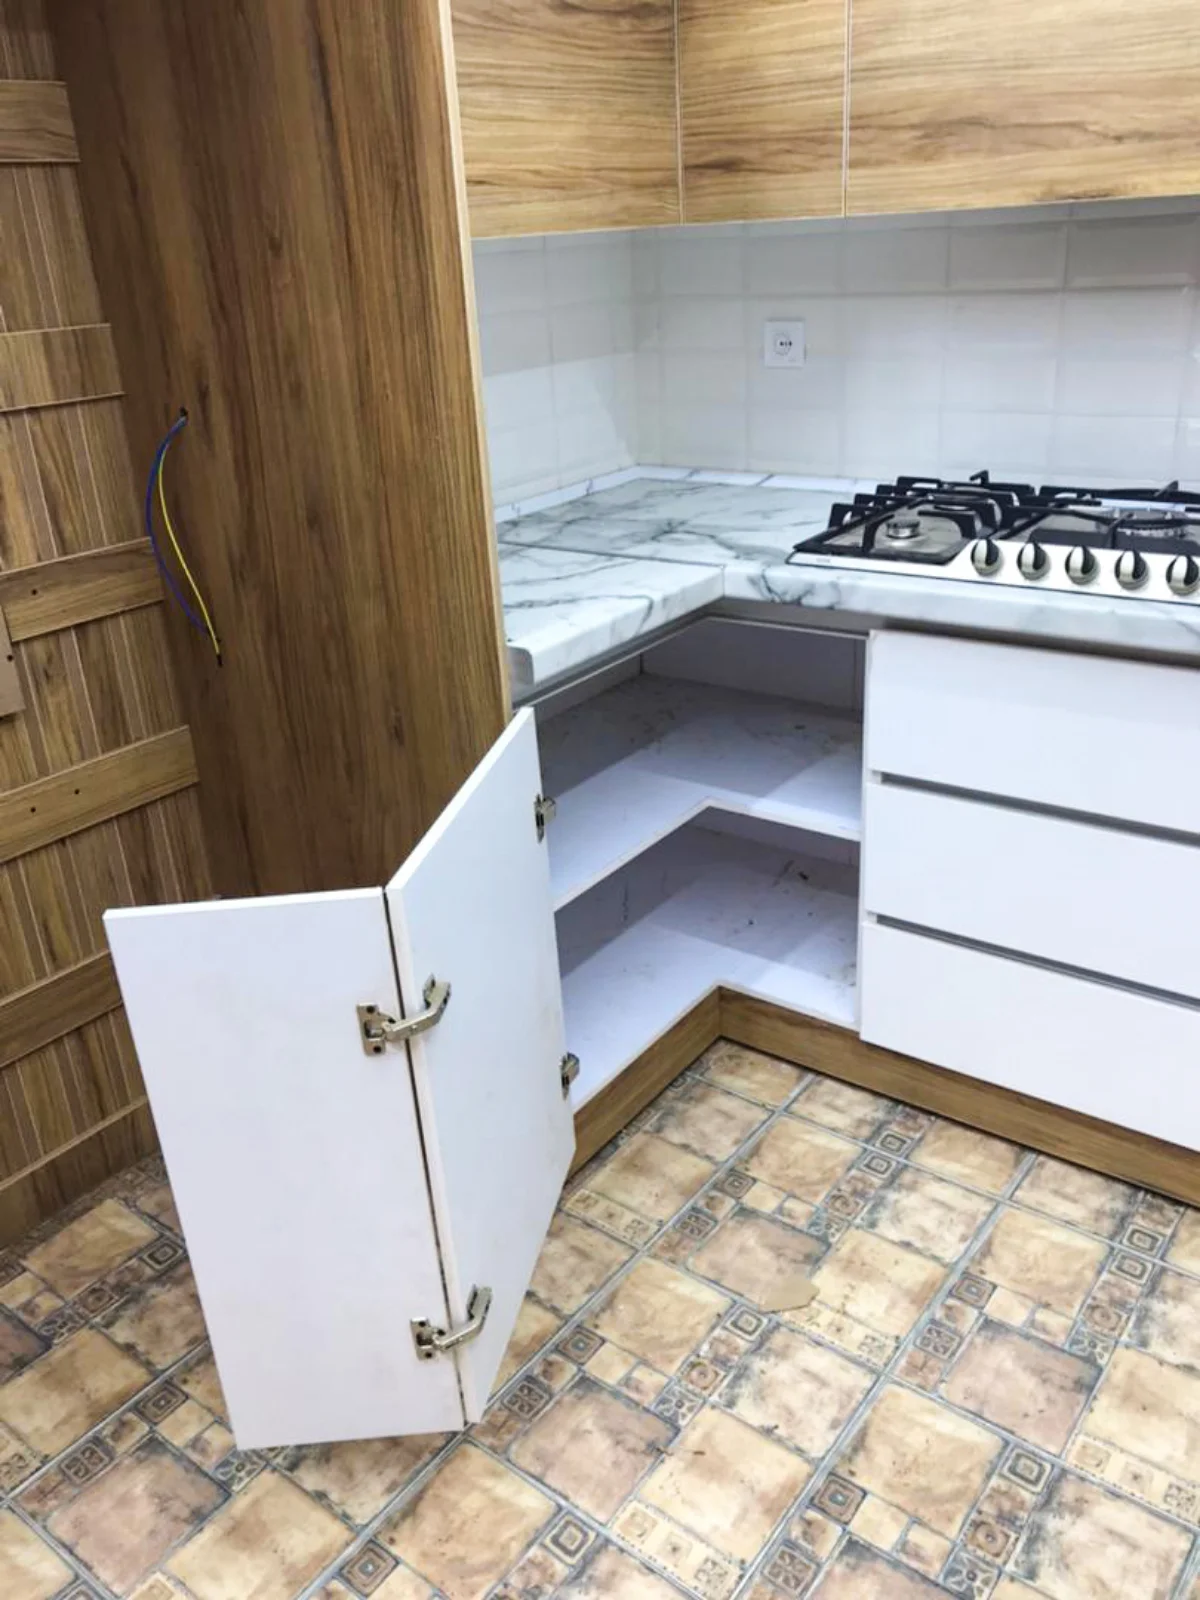 کابینت سفید در گوشه آشپزخانه با یک درب دوتکه